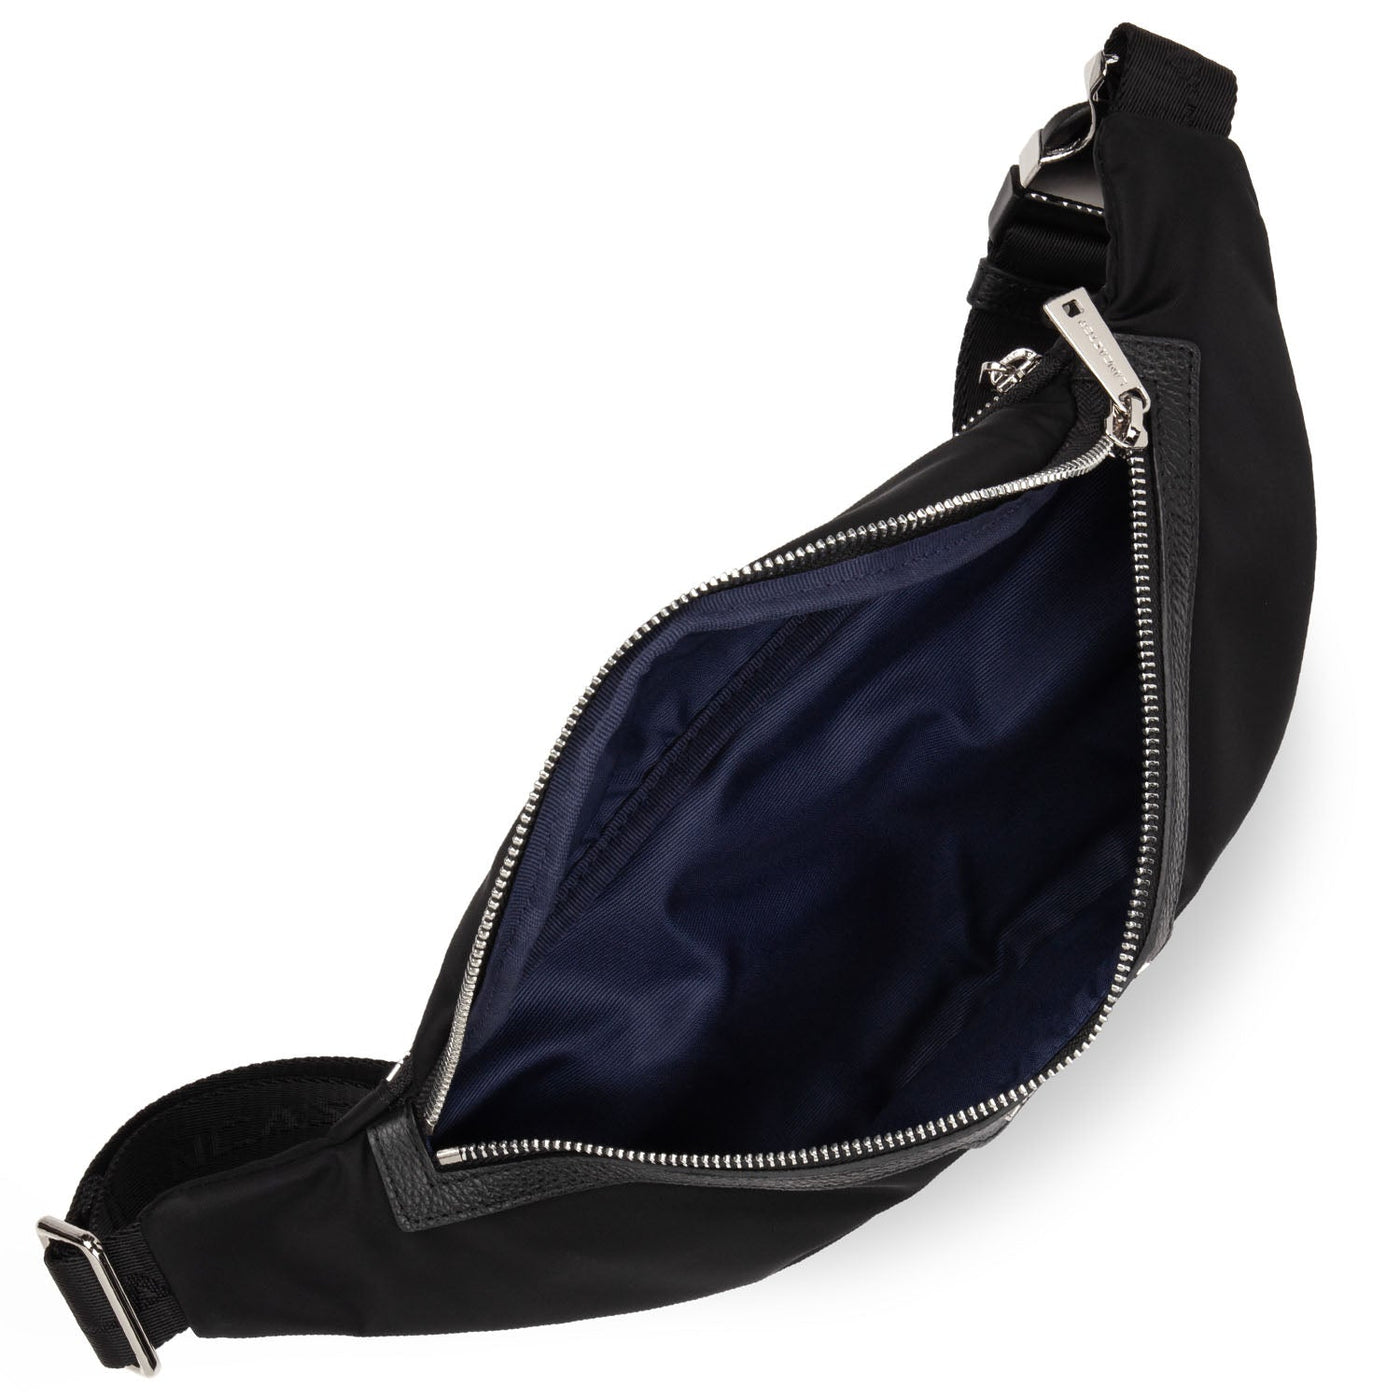 belt bag - basic premium homme #couleur_noir